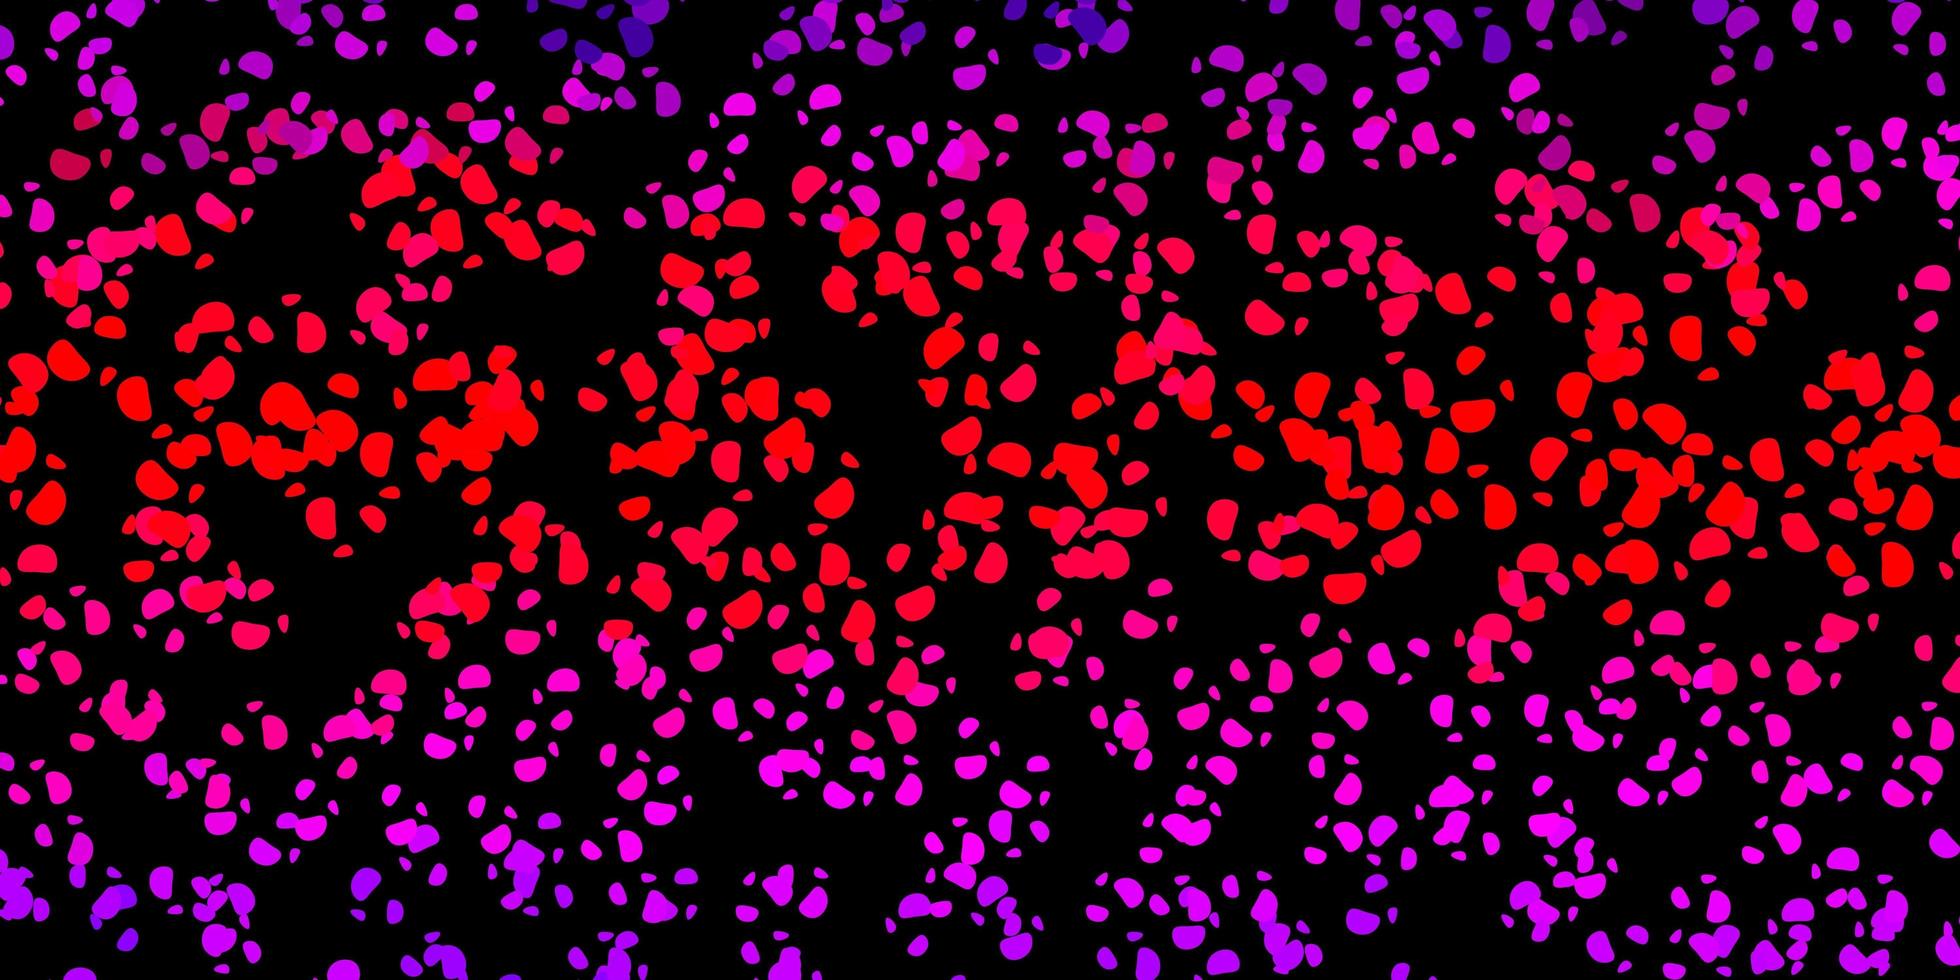 padrão de vetor roxo escuro, rosa com formas abstratas.